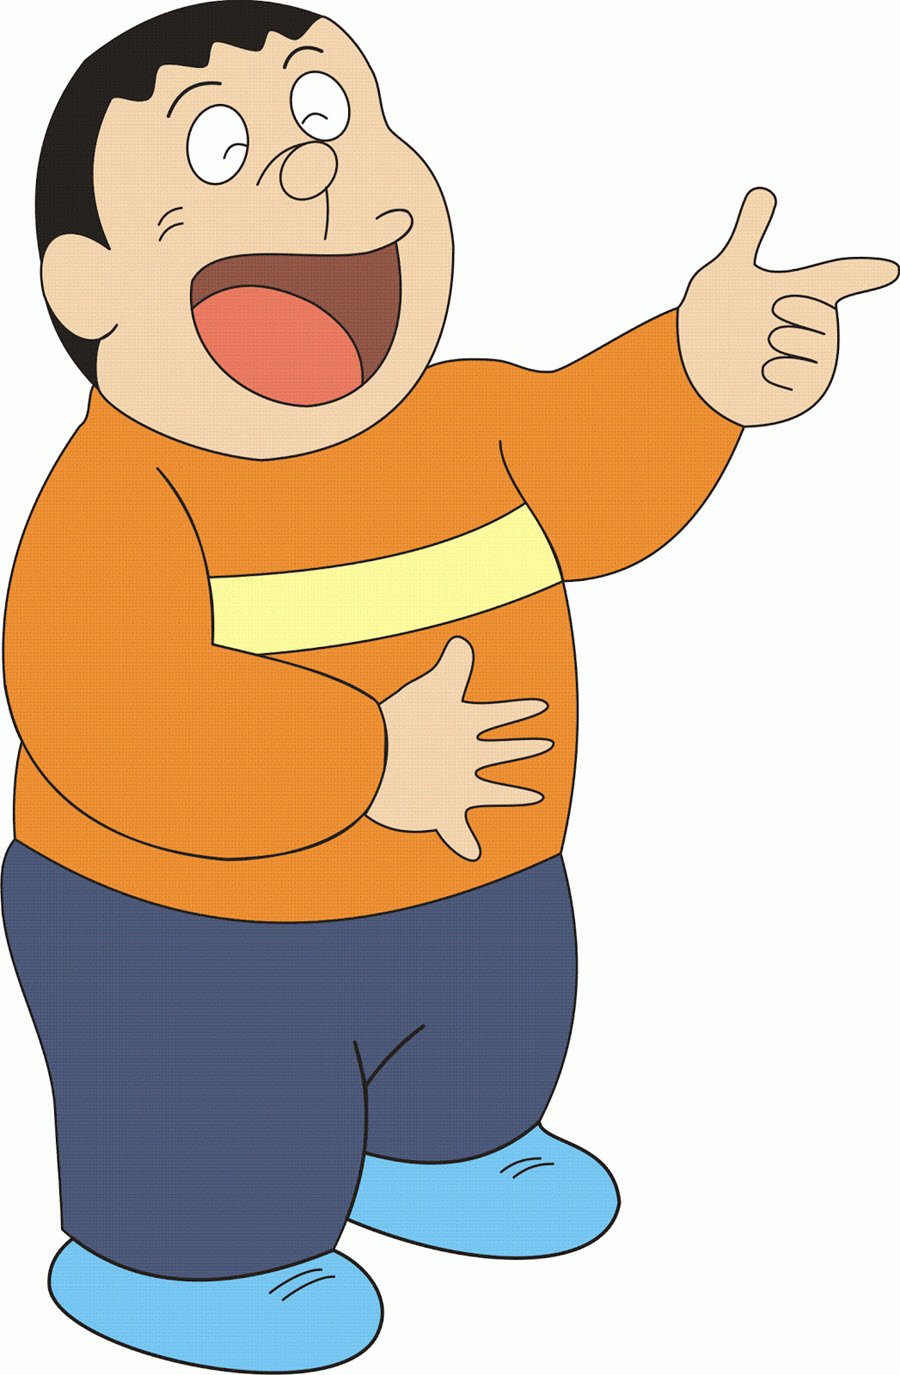 Tổng hợp hình ảnh Chaien đẹp nhất - Ảnh phim hoạt hình Doraemon